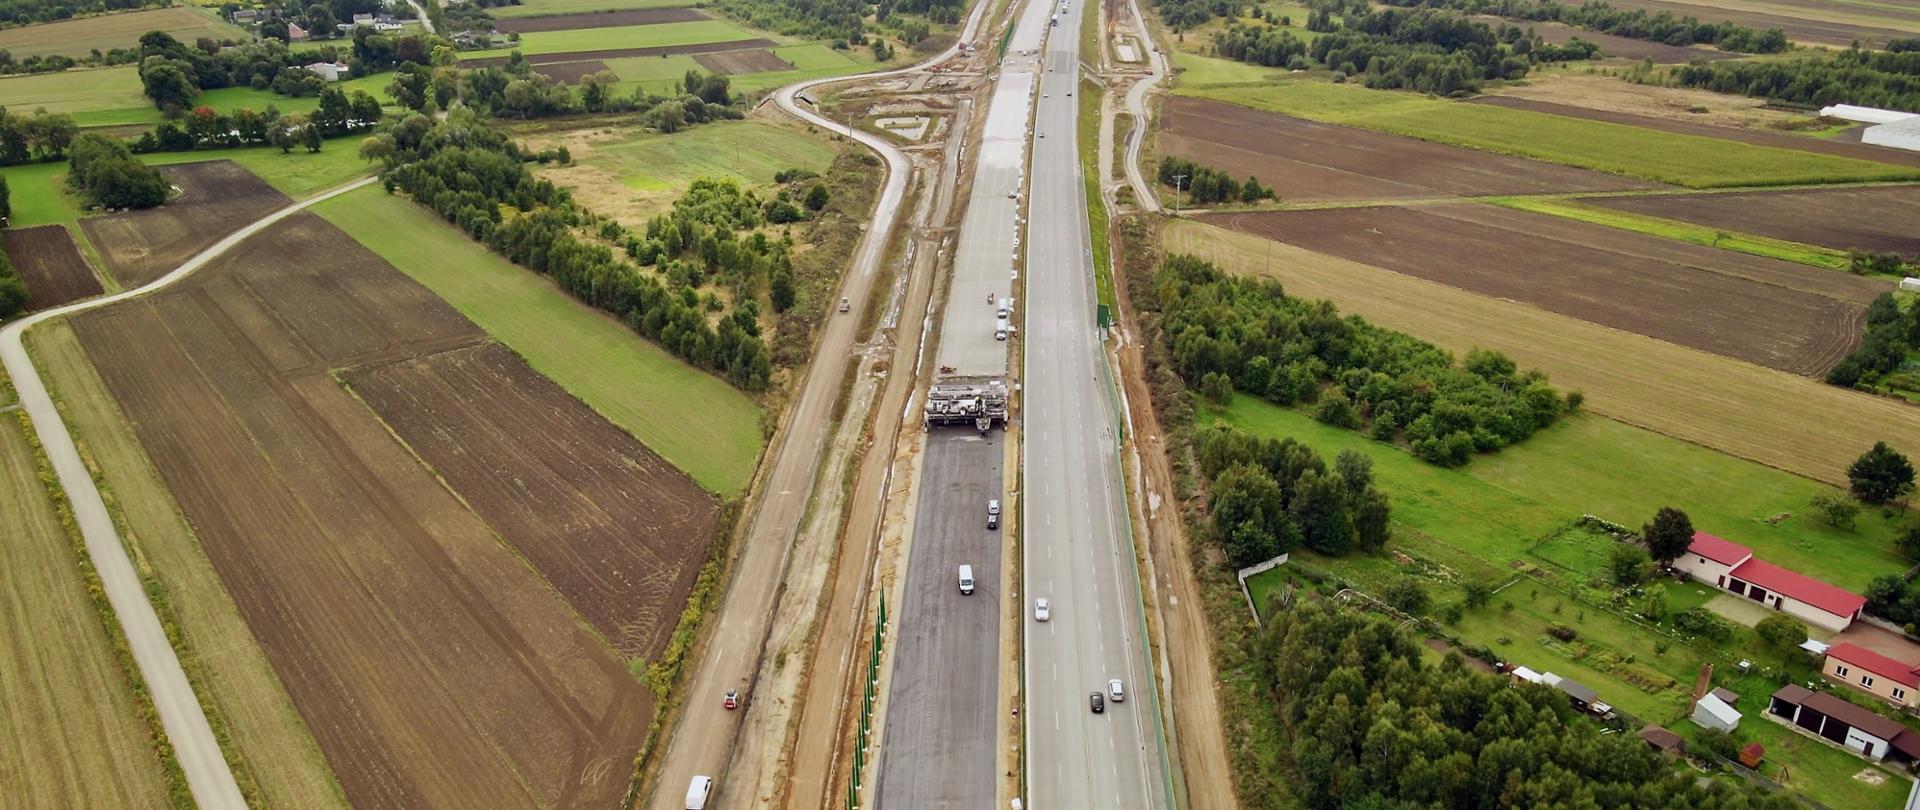 Fotografia z lotu ptaka przedstawiająca budowaną autostradę A1. W centralnej części fotografii znajdują się jezdnie. W prawej części - jezdnia wykonana po której już dwukierunkowo poruszają się pojazdy. Na drugiej jezdni - po lewej stronie - widoczna maszyna do układania nawierzchni betonowej. 